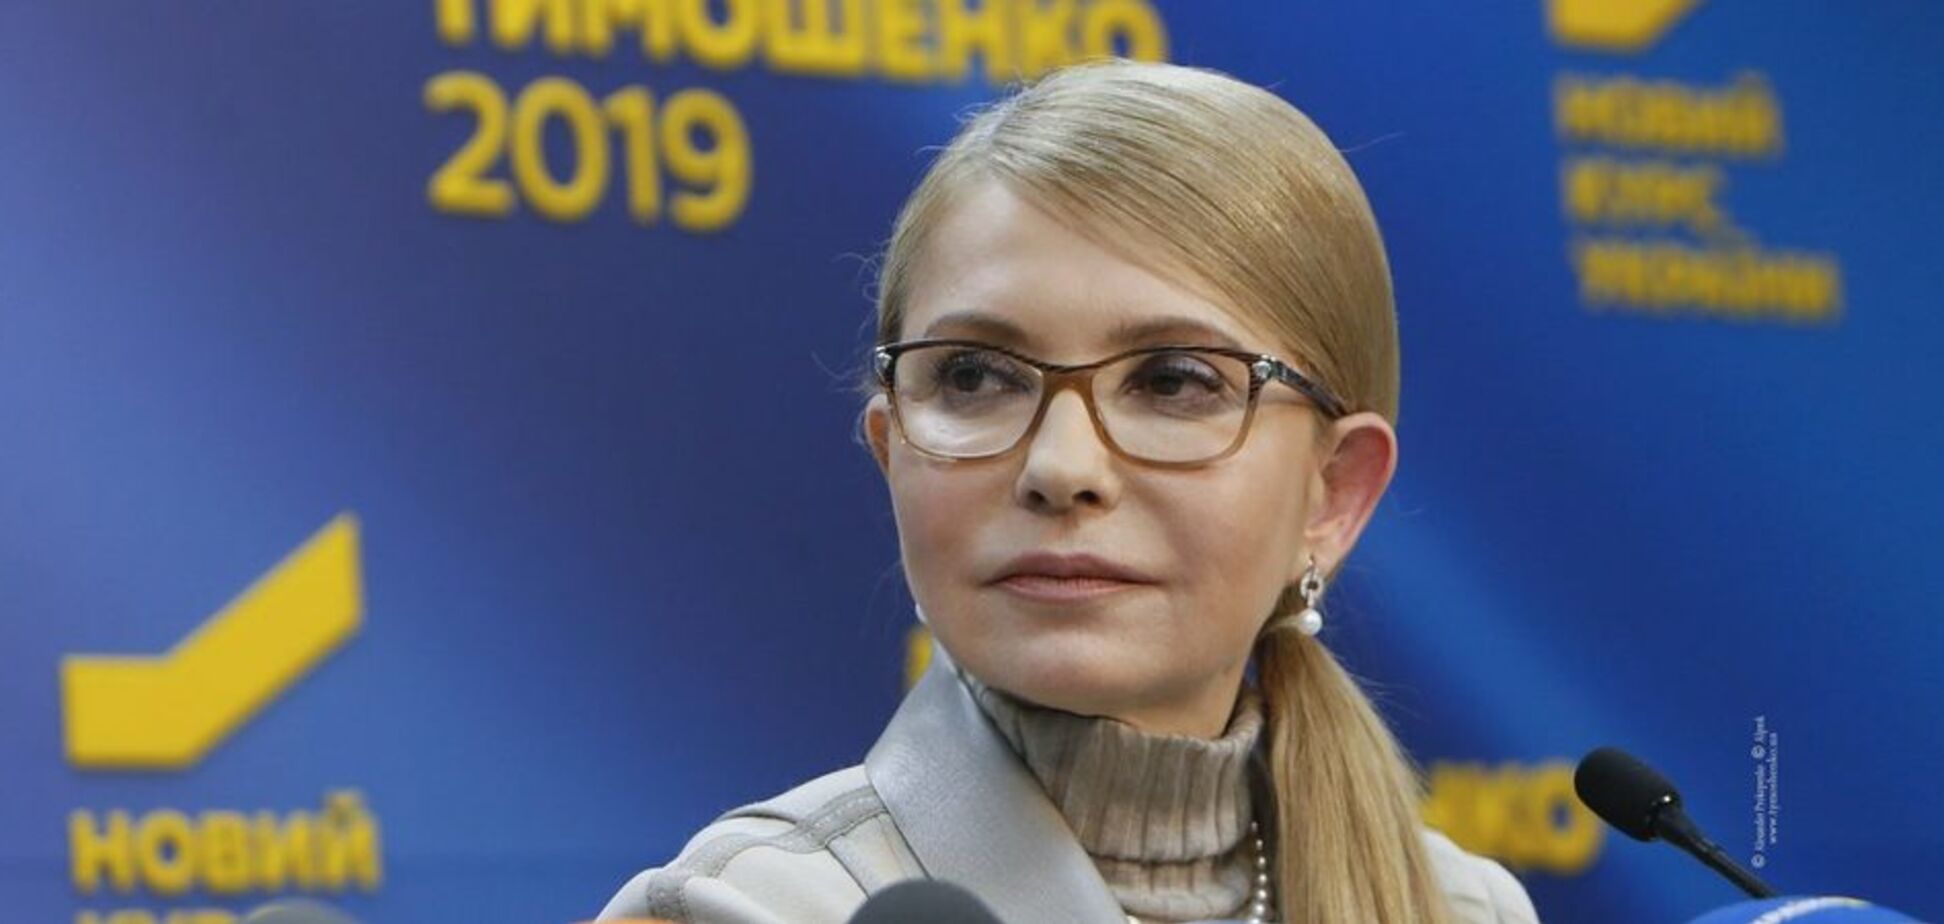 Наша победа будет честной – Тимошенко